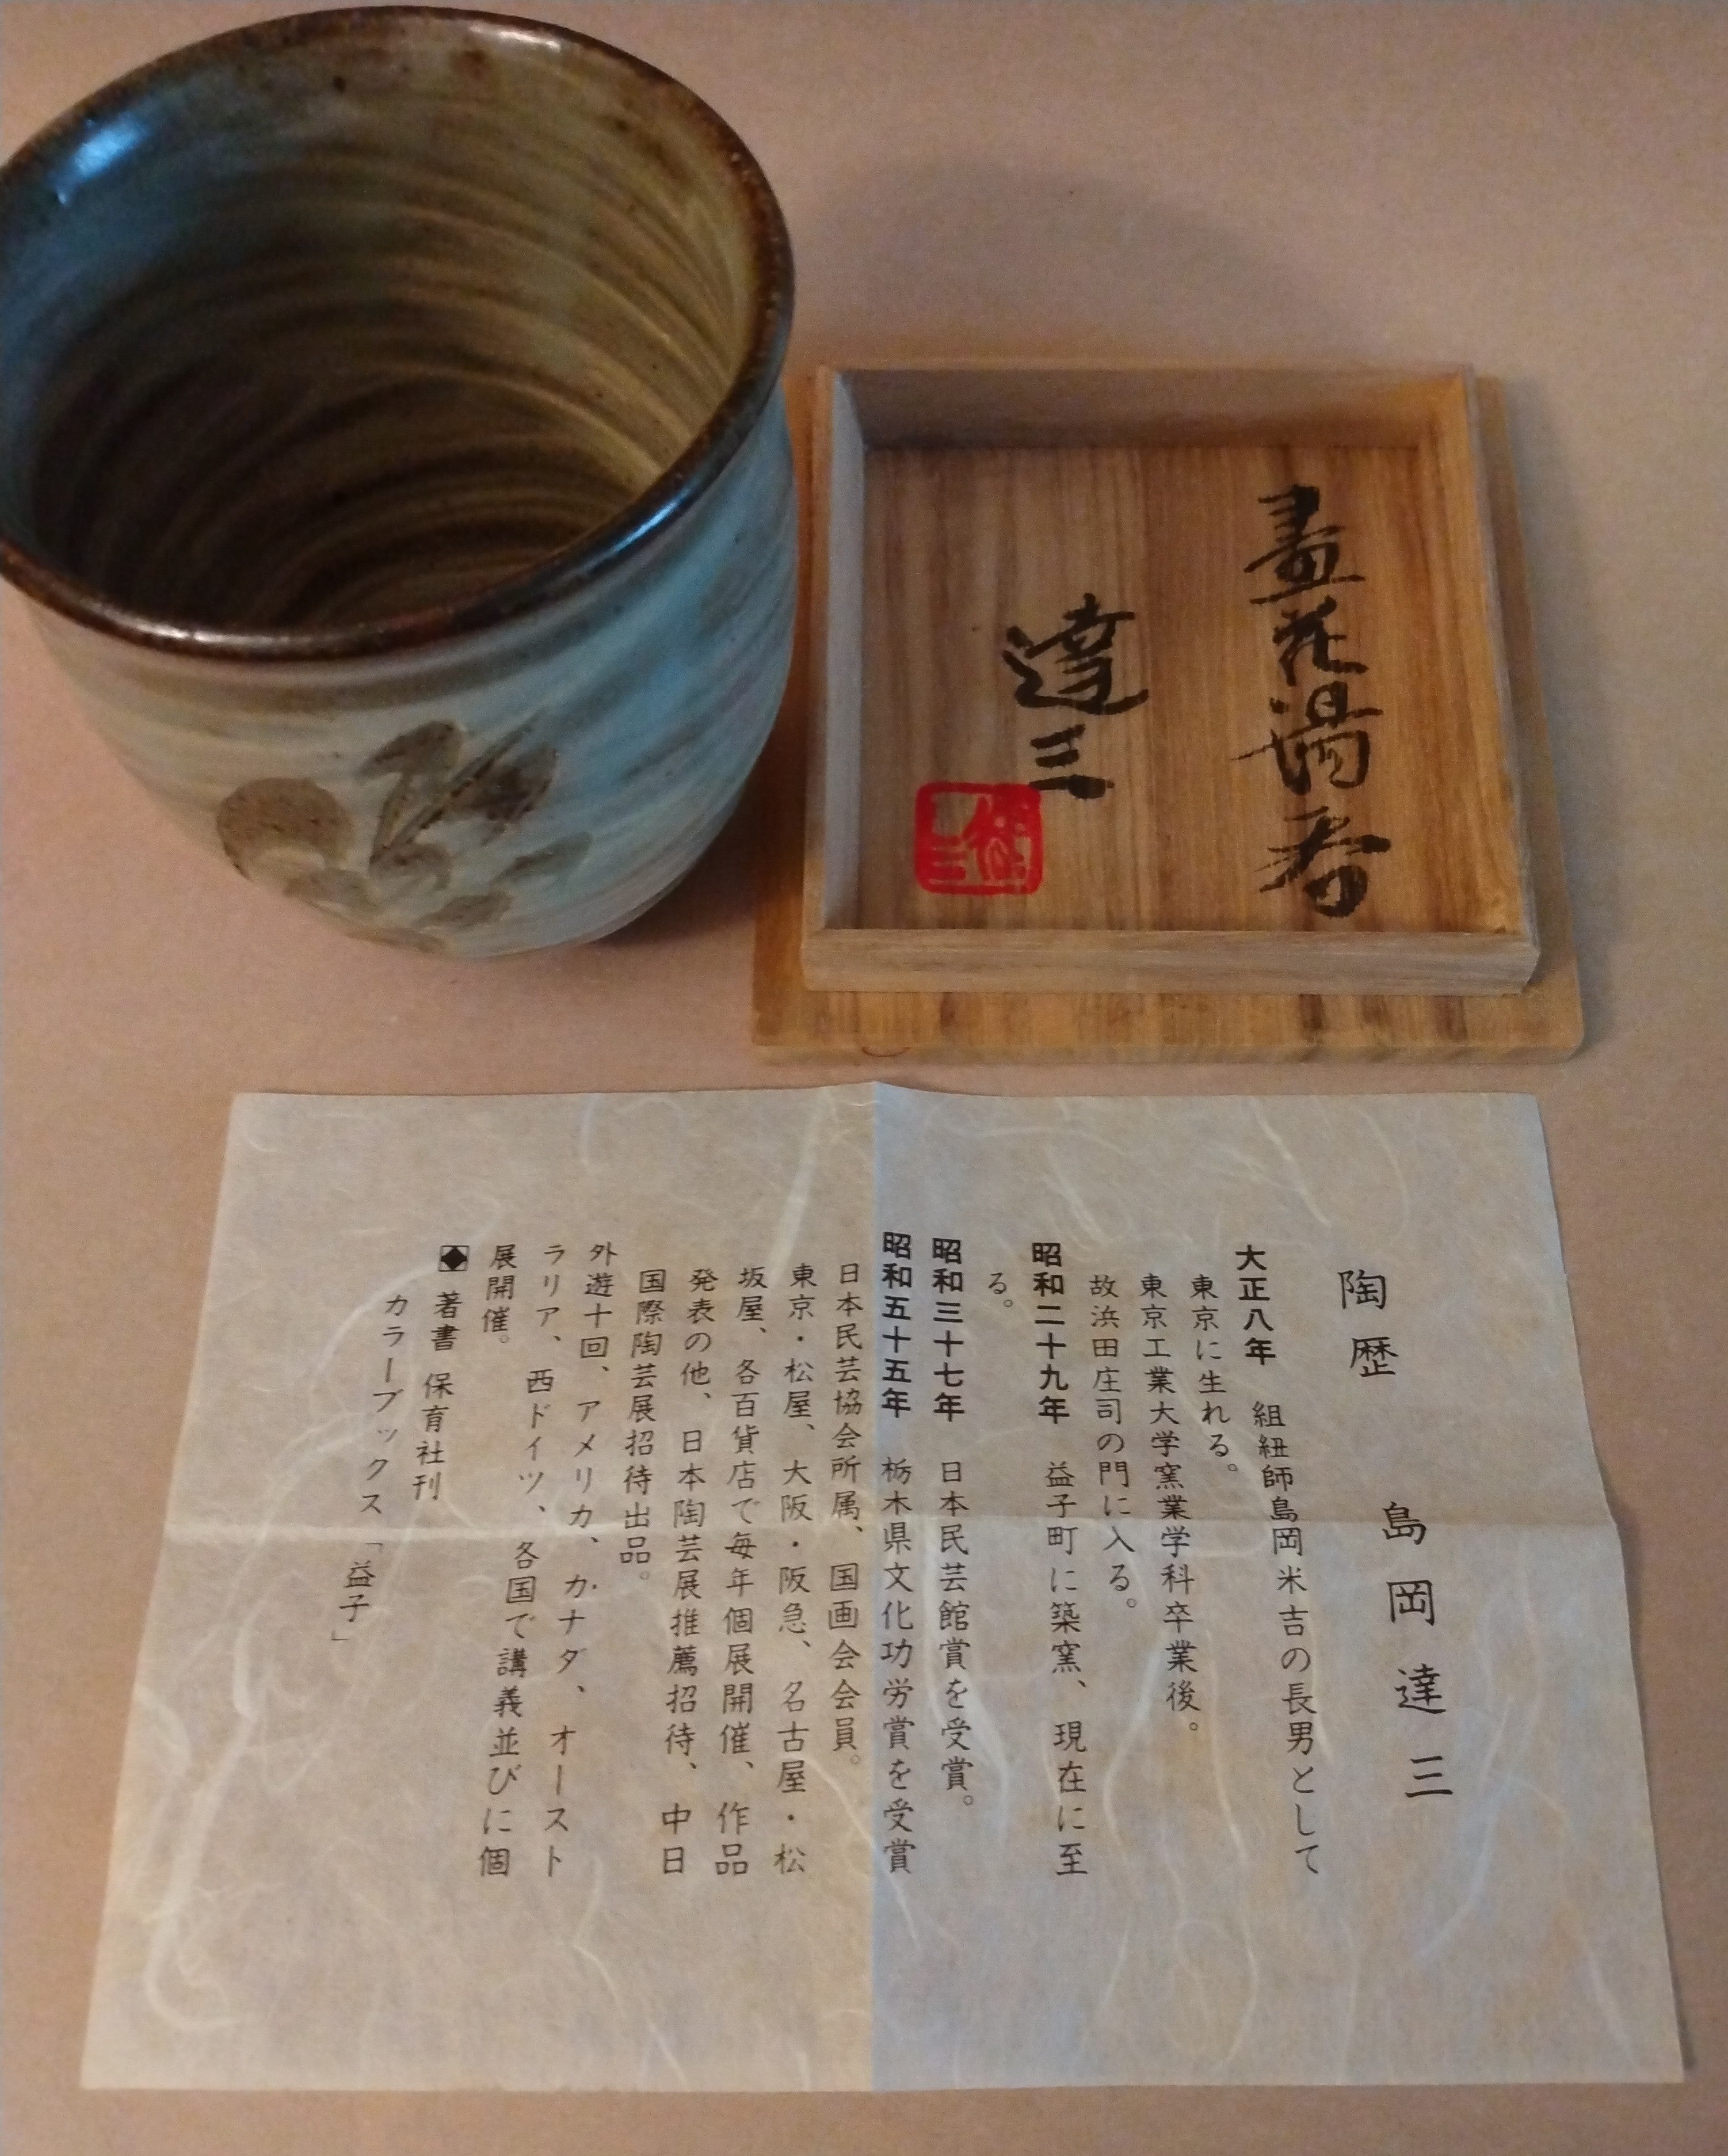 Yunomi, Tea Cup, by Shimaoka Tatsuzo, Mashiko, ca. 1980